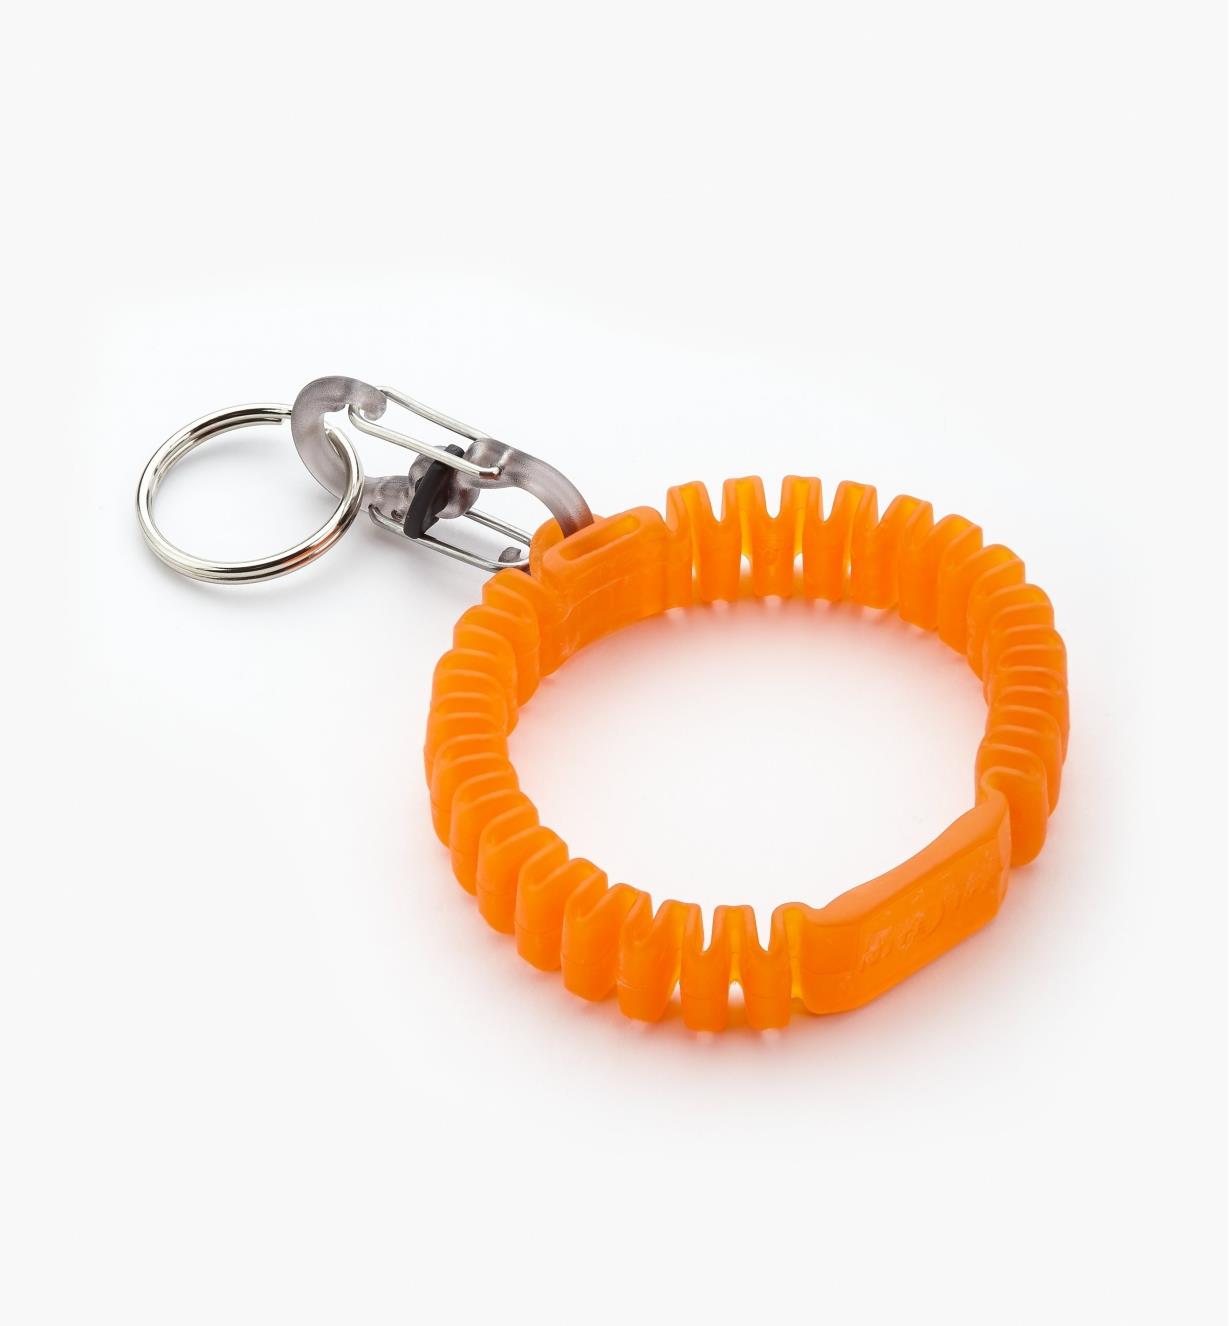 68K0941 - Bracelet porte-clés Band-It, orange